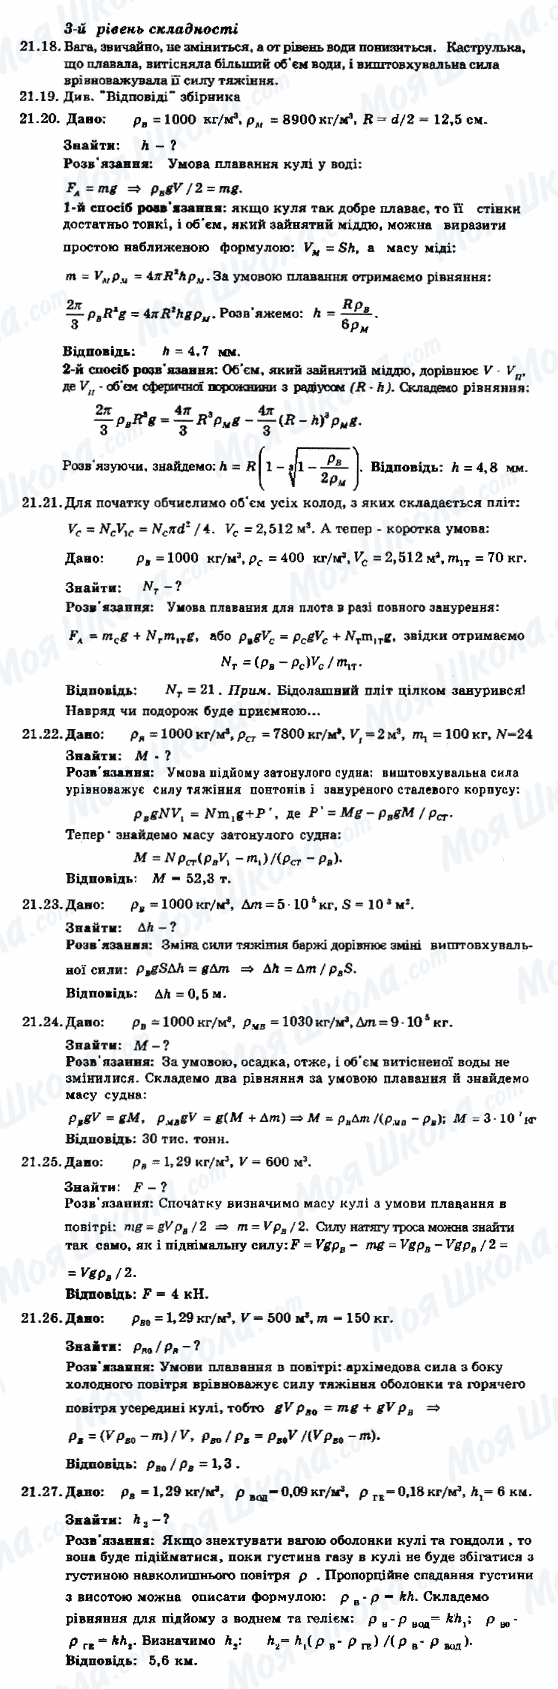 ГДЗ Физика 8 класс страница 21.18-21.27